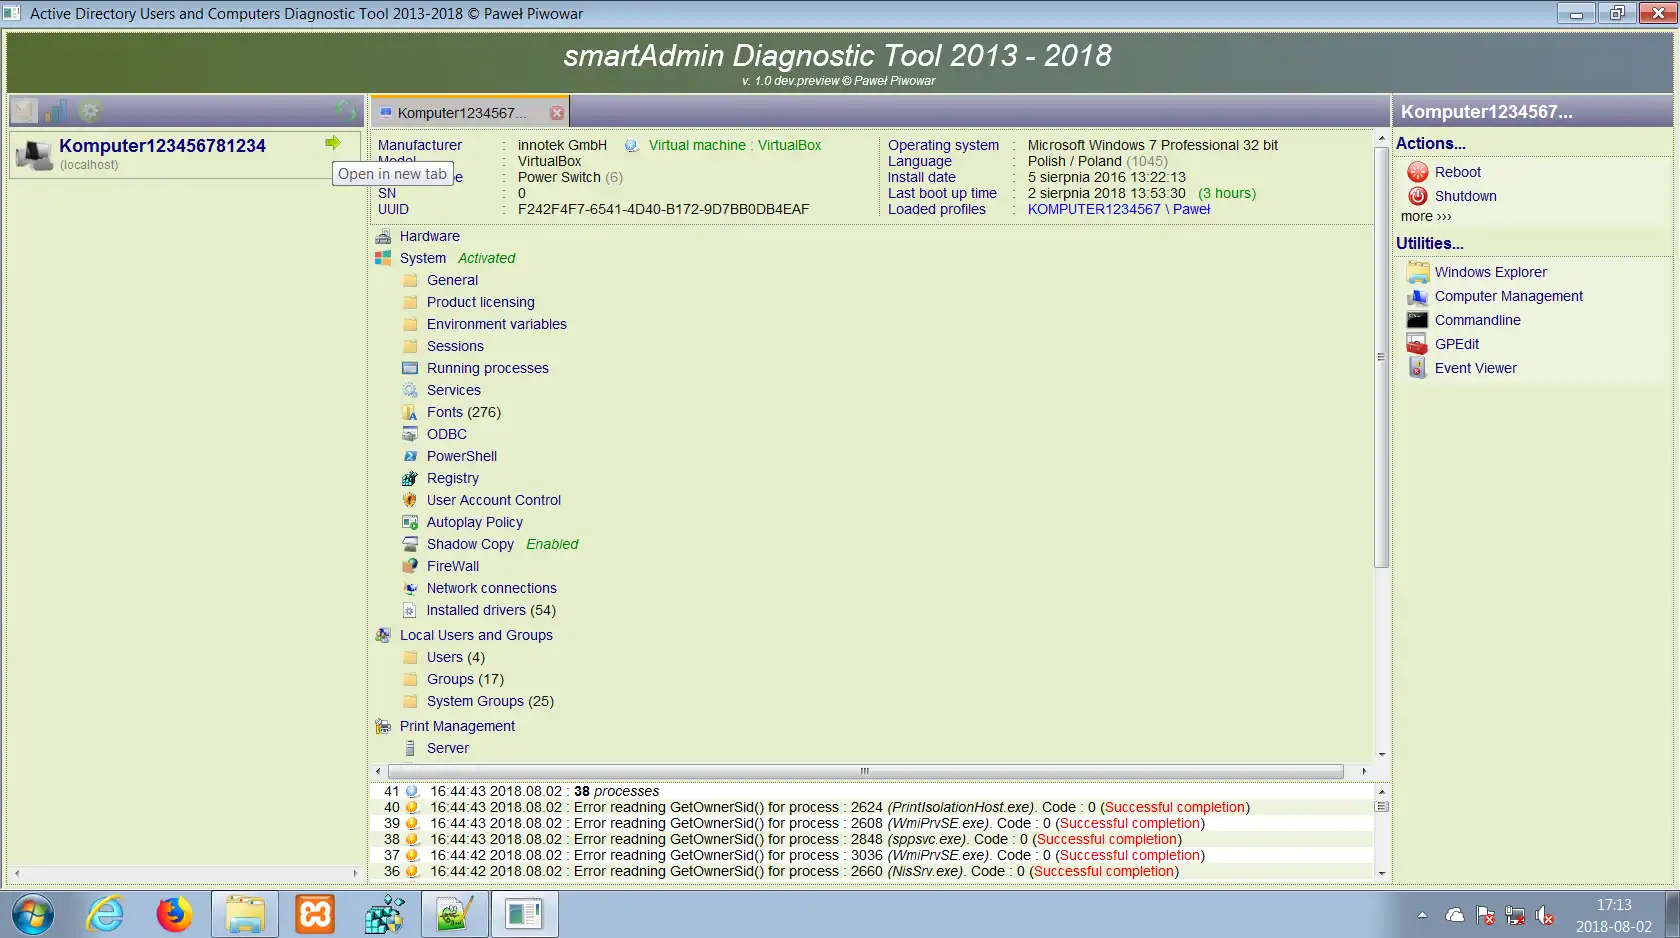 הורד את כלי האינטרנט או אפליקציית האינטרנט smartADmin Diagnostic Tool